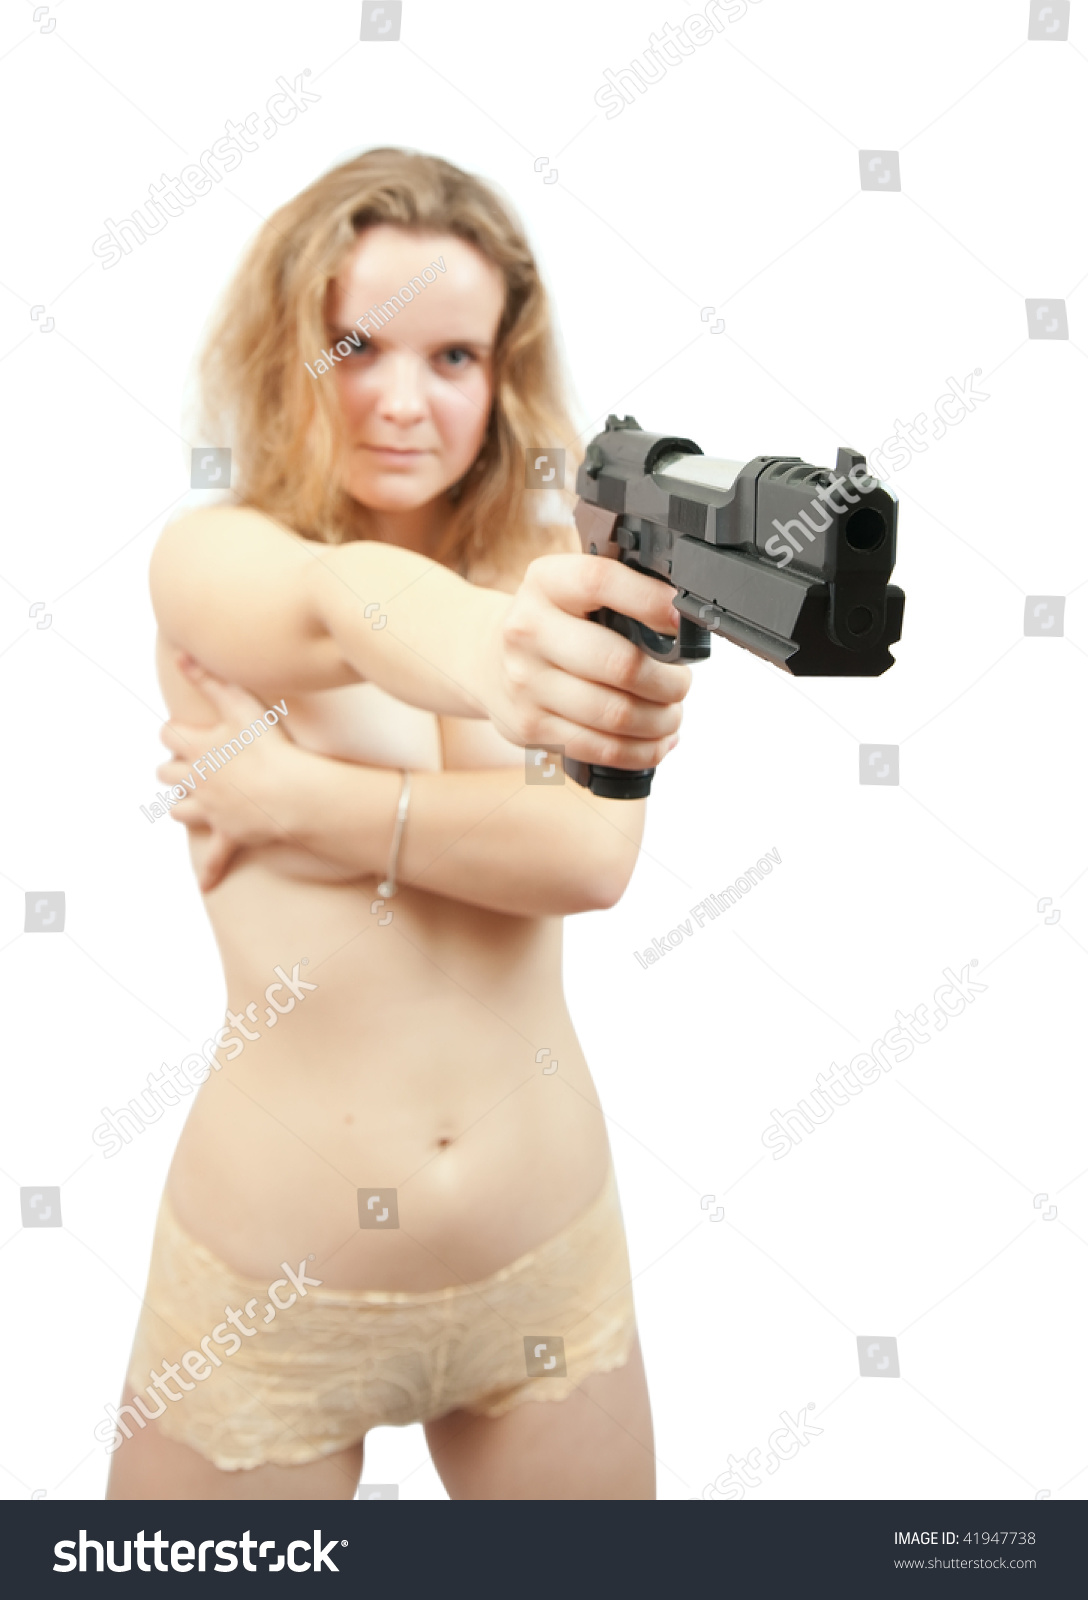 christian jarrett add photo naked girls holding guns